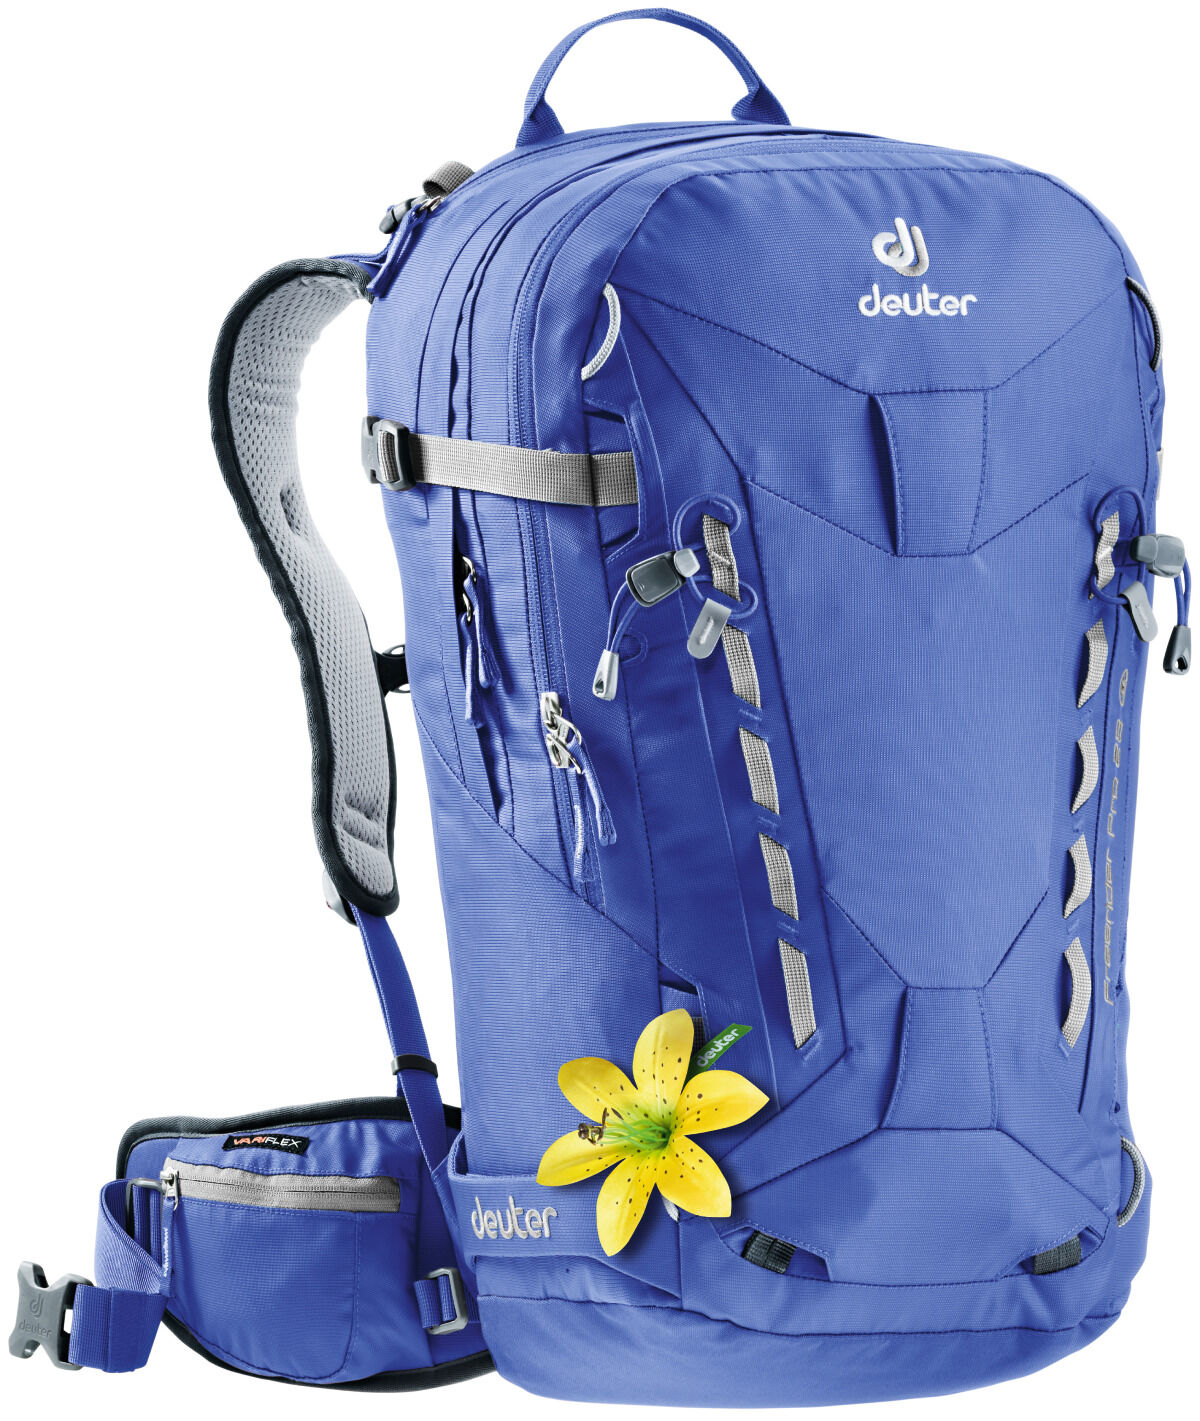 Deuter - Freerider Pro 28 SL - Ski Touring backpack - Women's